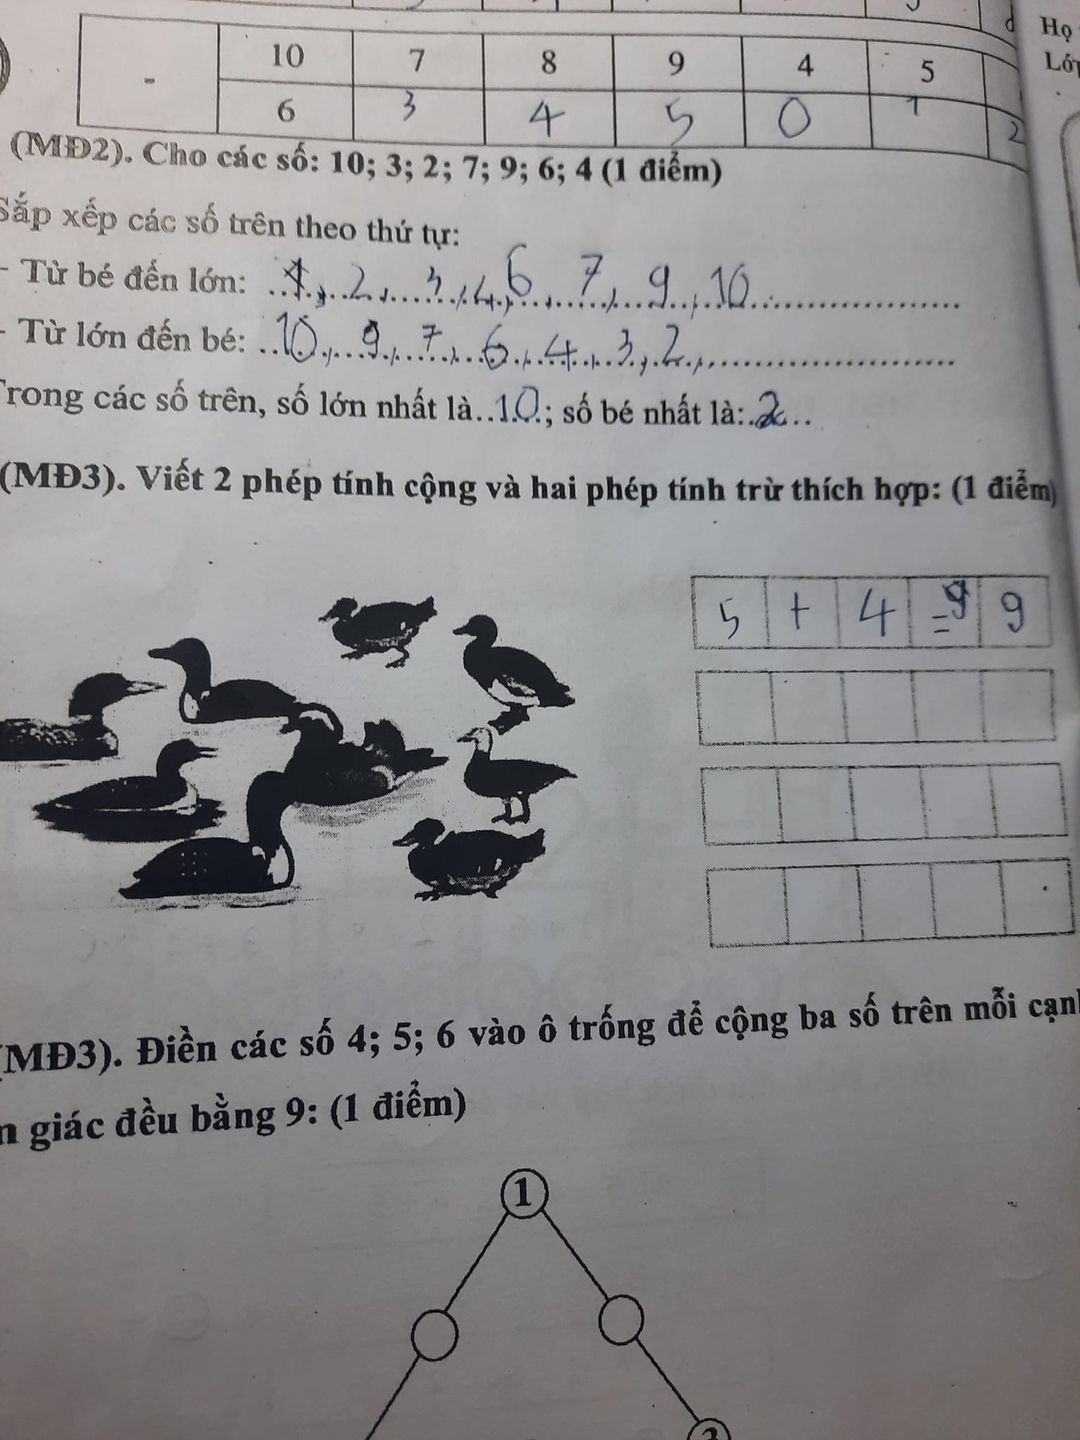 Bà mẹ hỏi cách làm bài Toán lớp 1 của con: 4 5=9 hay 3 6=9 mới đúng, đọc xong cũng tự thấy lú! - Ảnh 1.